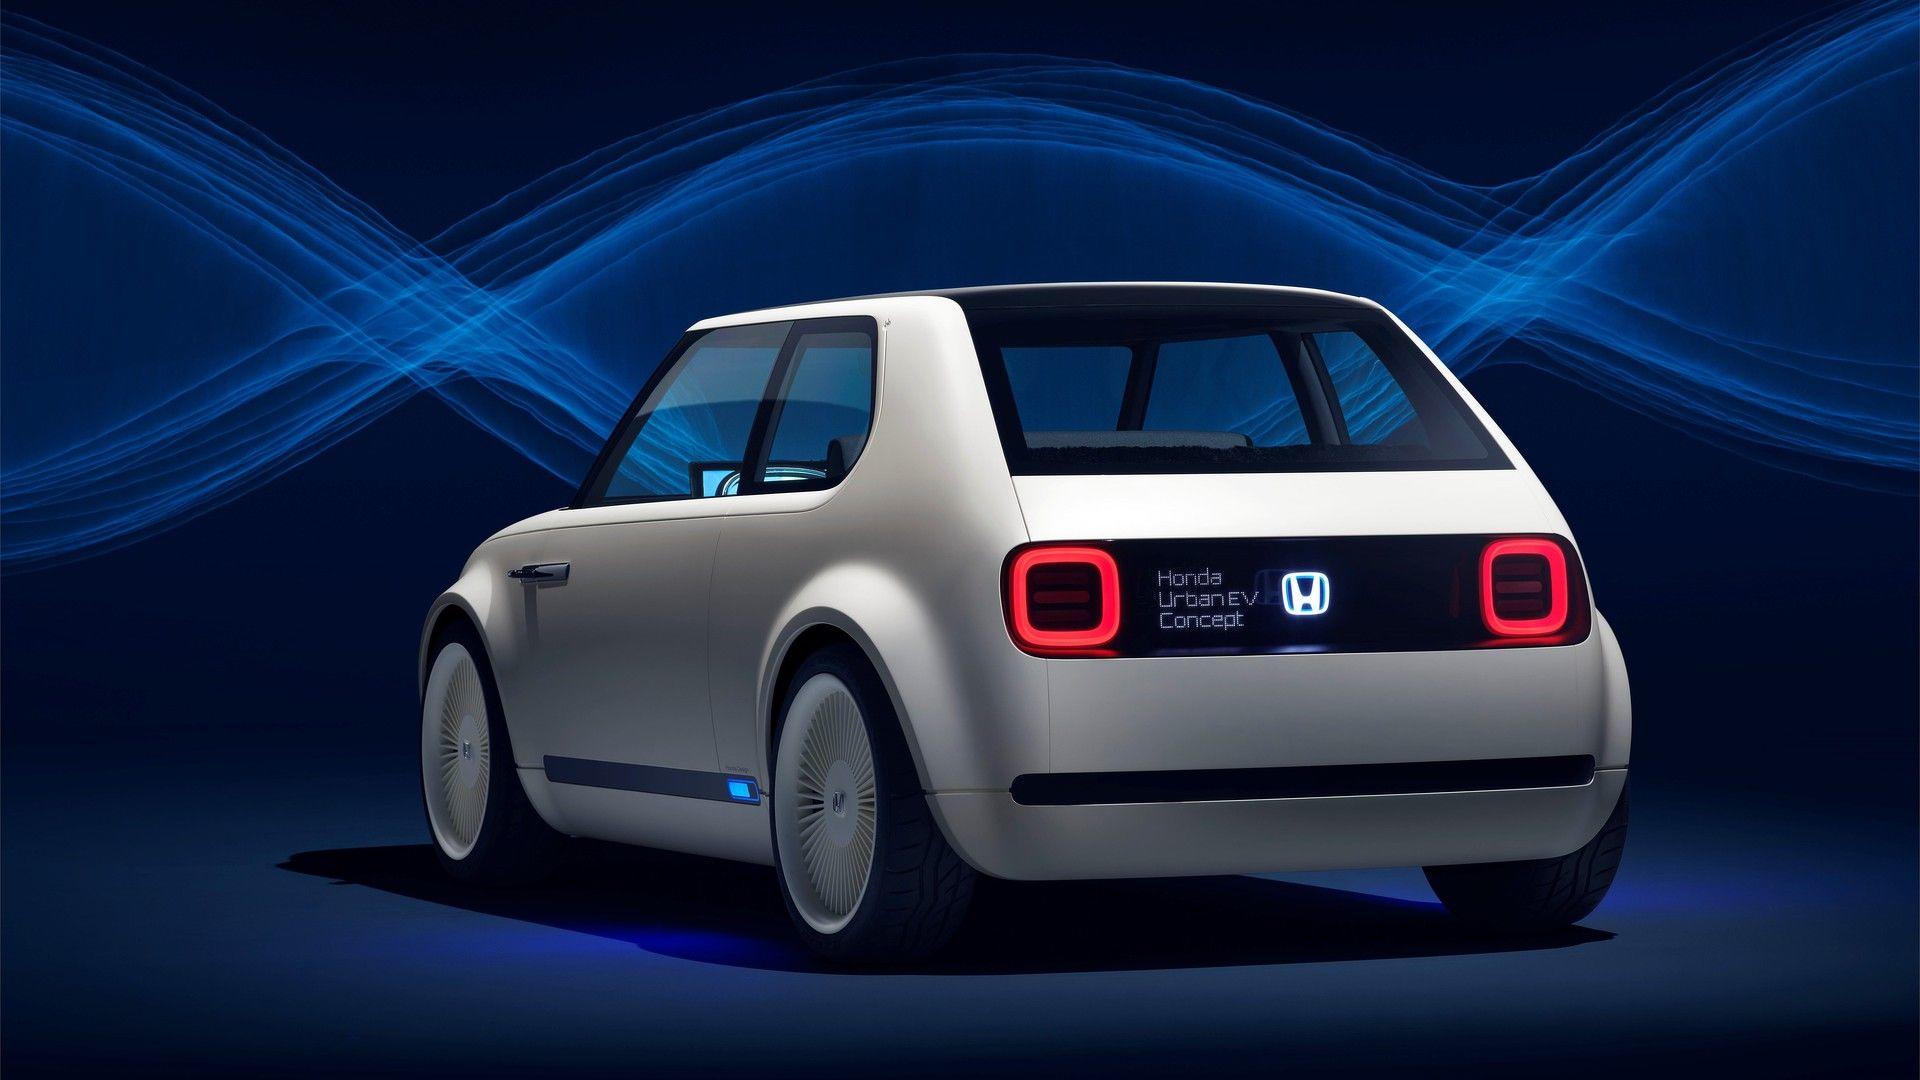 Honda anticipa el próximo coupé que presentará en Tokio, también eléctrico